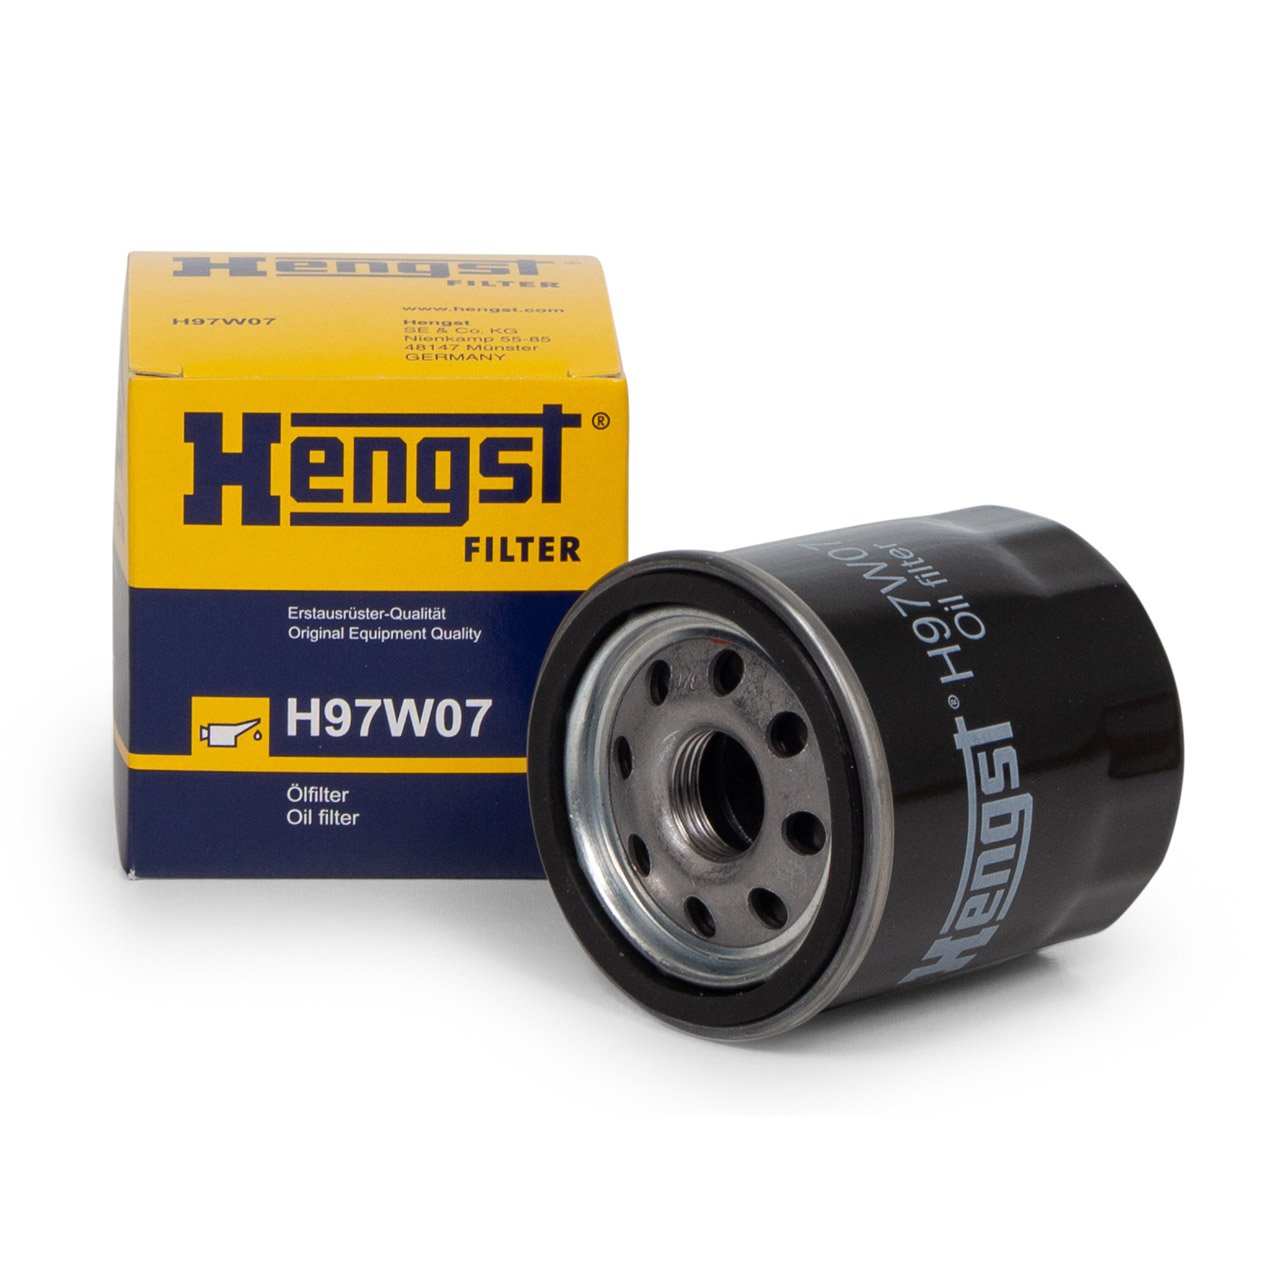 فیلتر روغن H97W07 برند هنگست – HENGST ( اصلی )